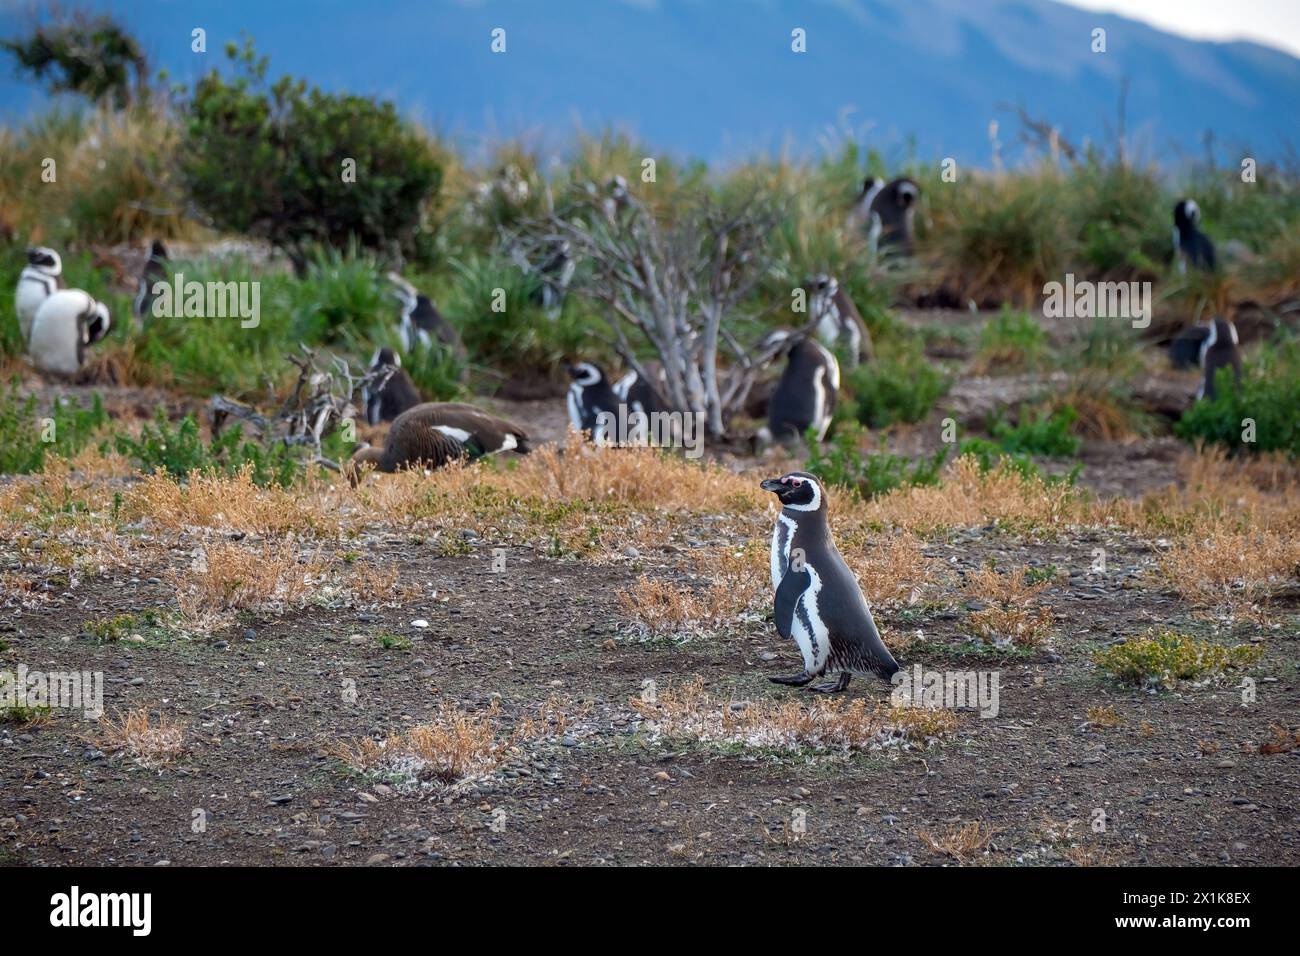 Ushuaia, Tierra del Fuego, Argentinien - Magellan-Pinguine auf der Isla Martillo im Beagle-Kanal, der Beagle-Kanal ist eine natürliche Wasserstraße an der Sou Stockfoto